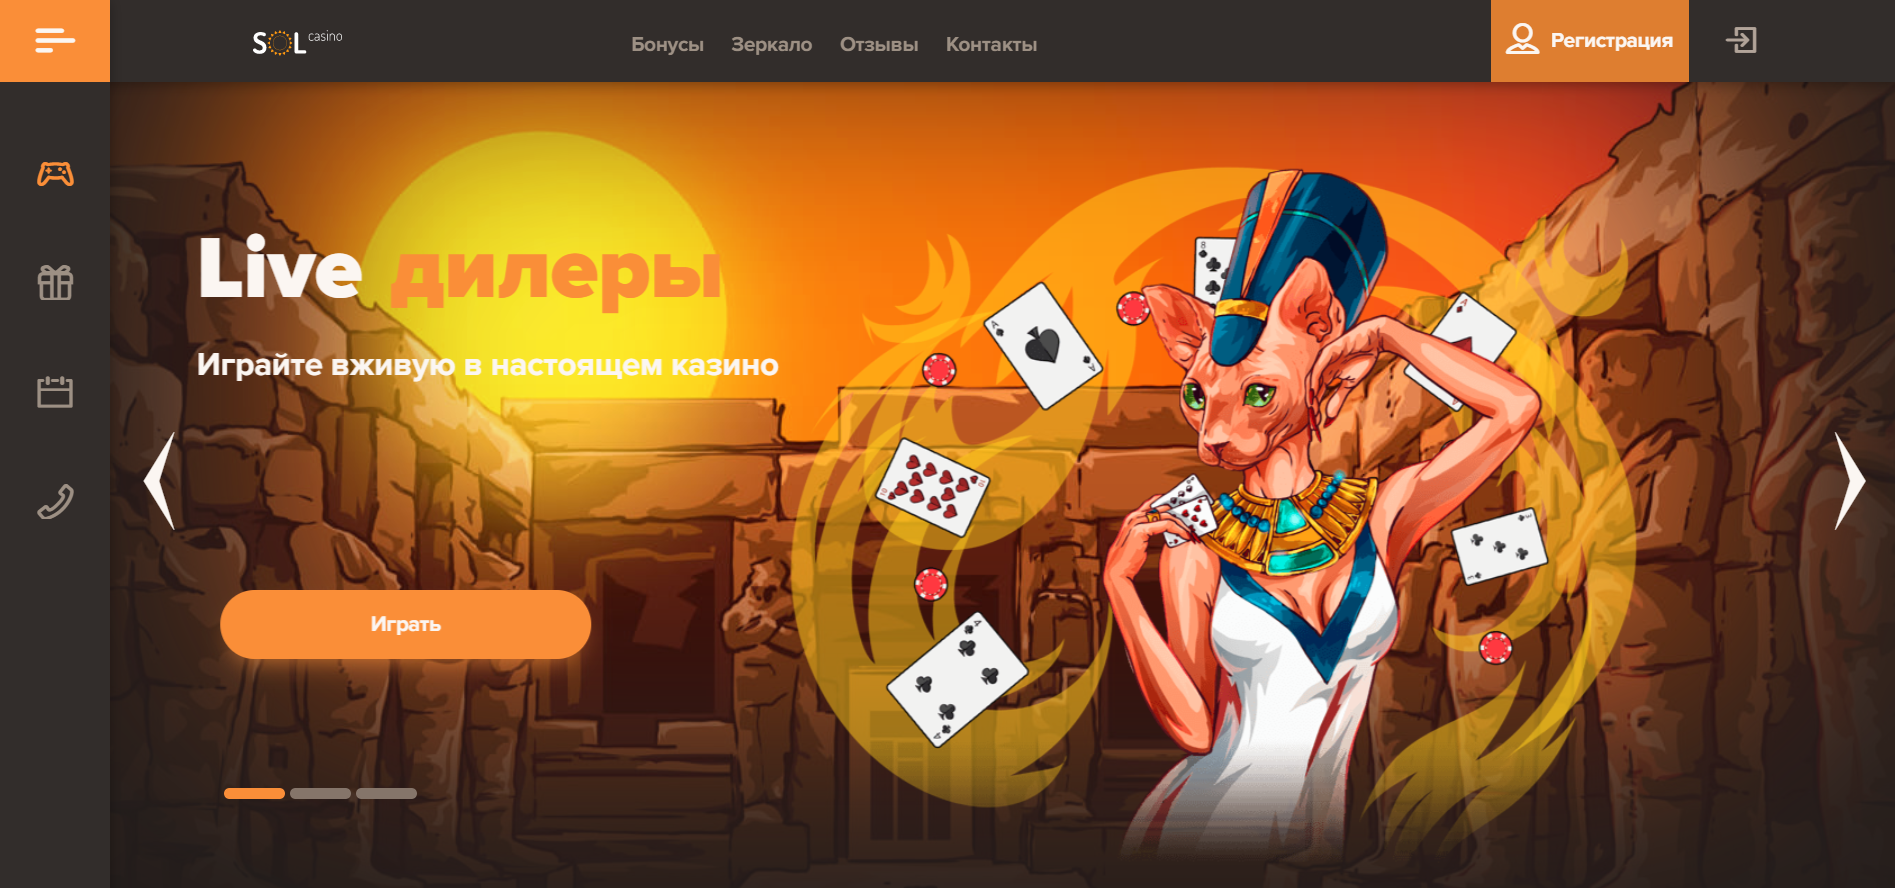 Онлайн казино sol клуб казино 777 официальный сайт мобильная